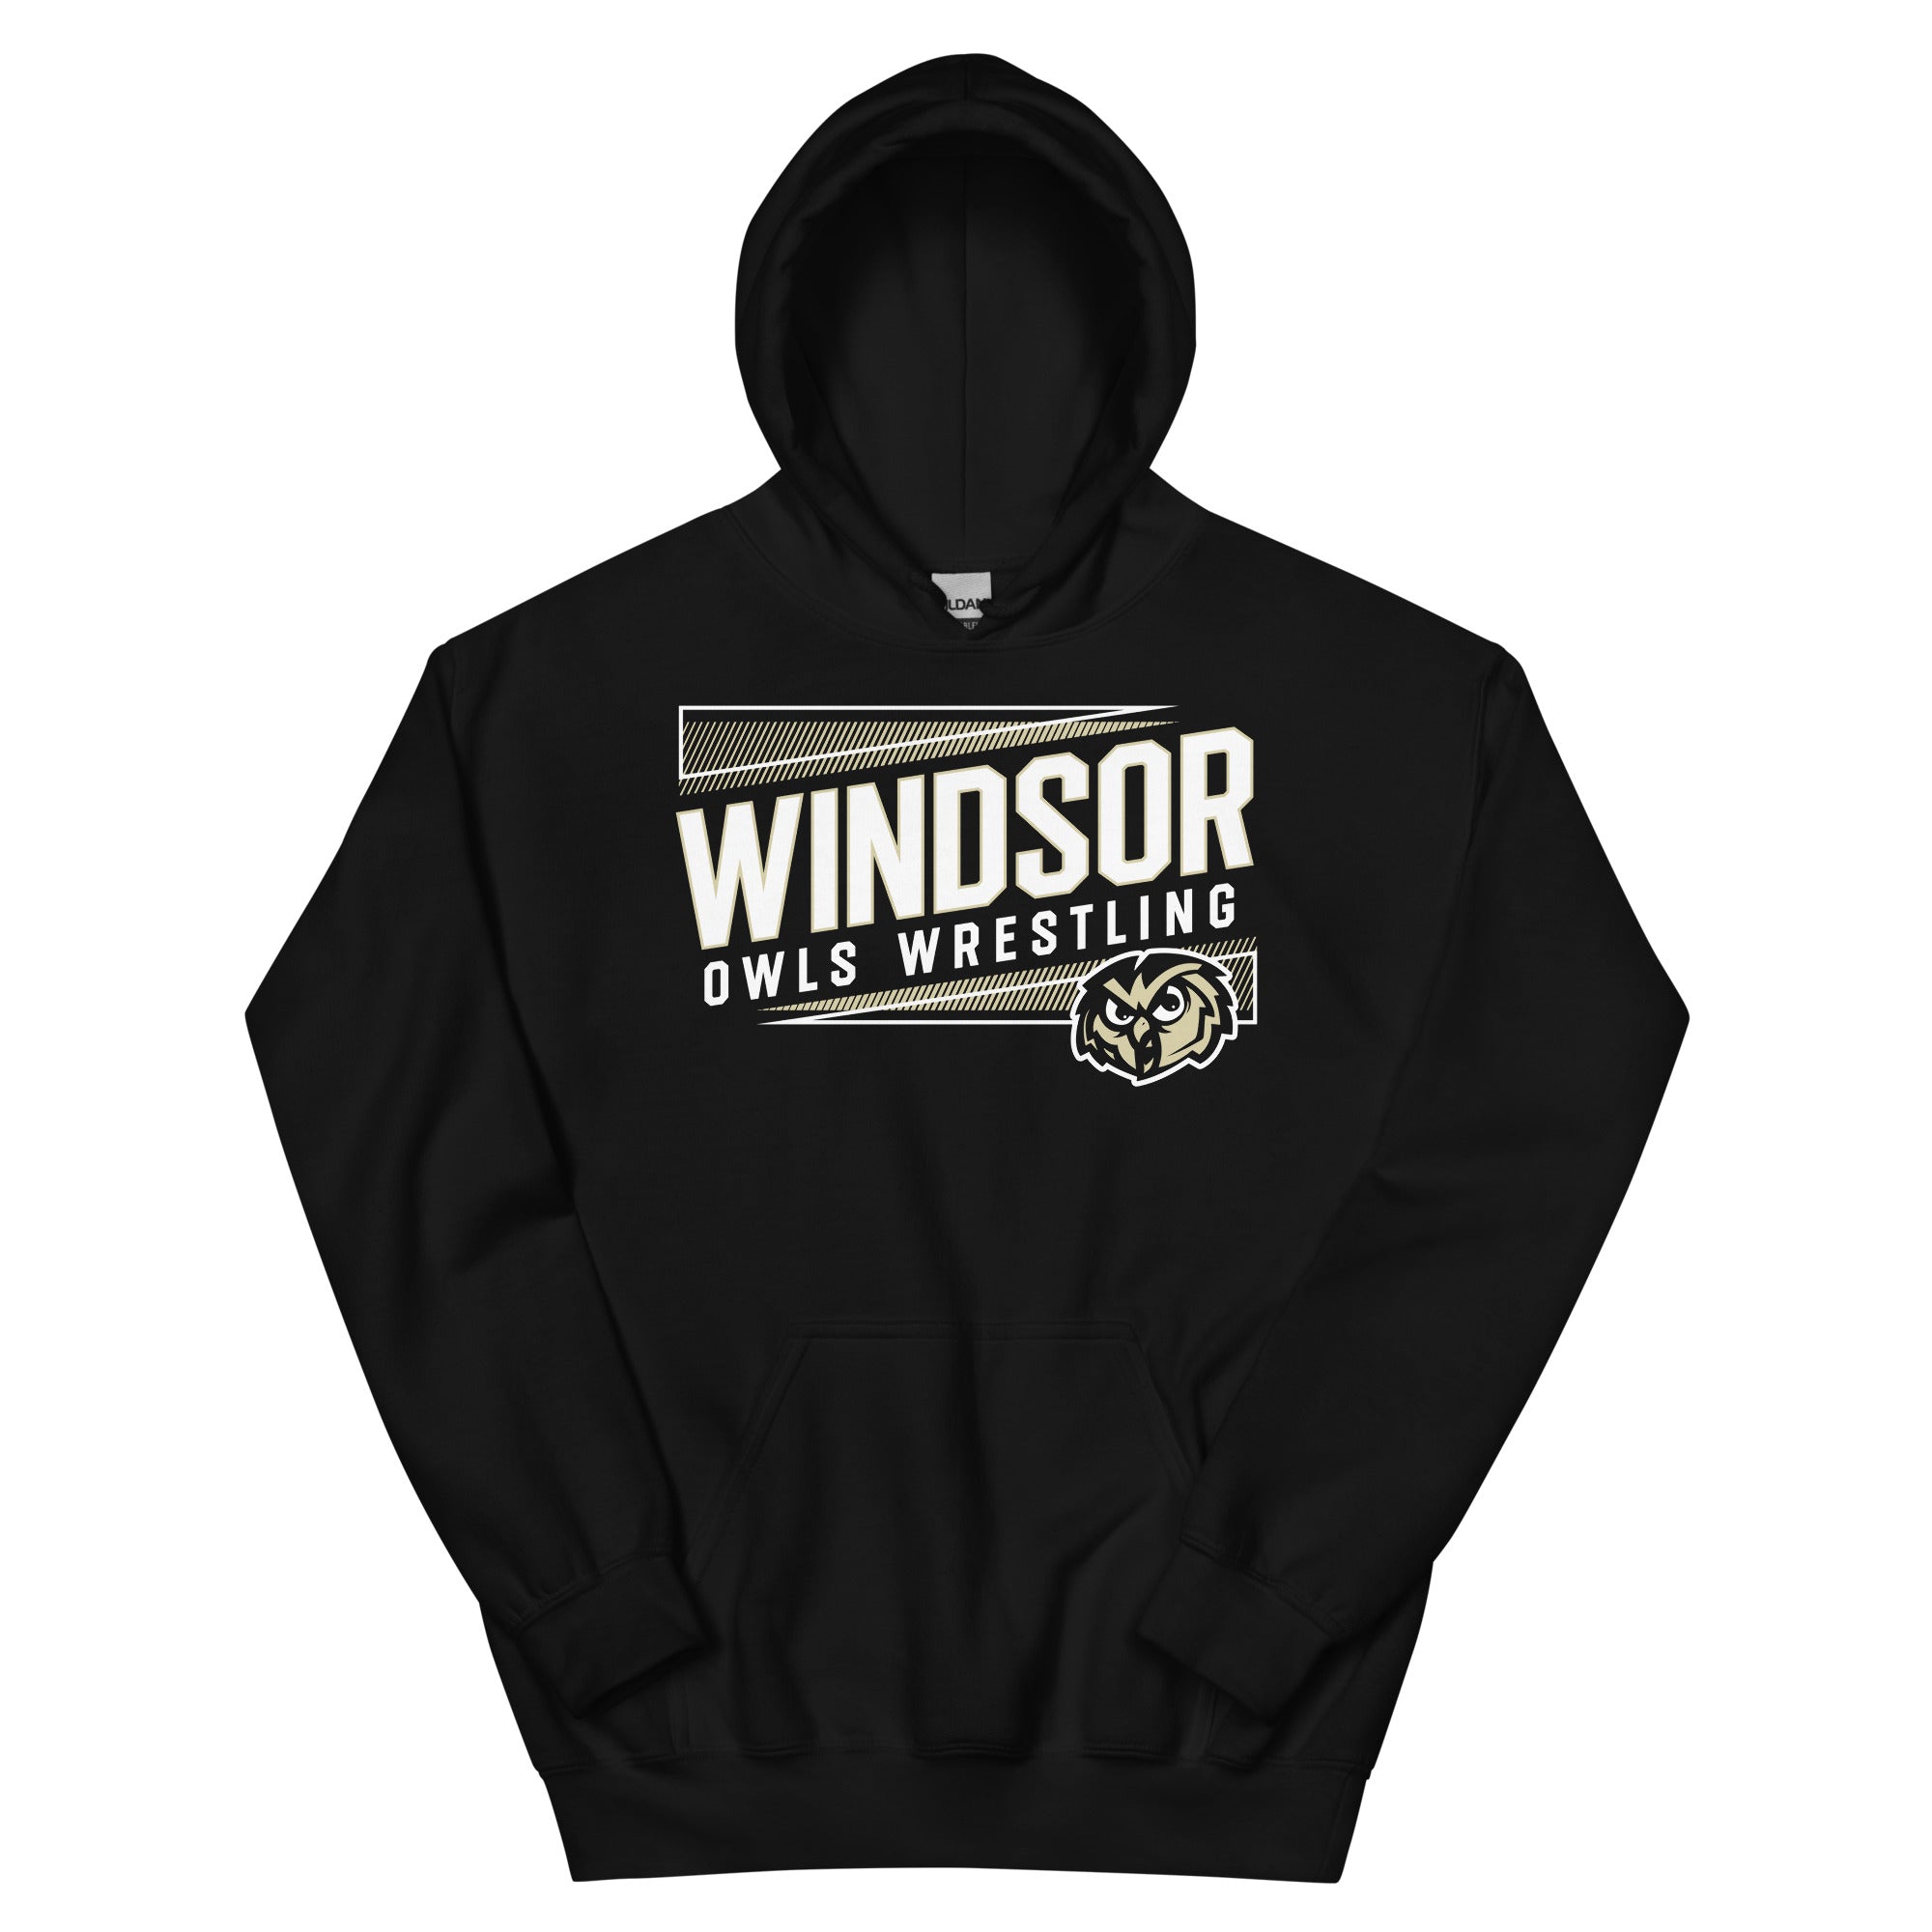 Windsor HS (MO) Unisex Heavy Blend Hoodie